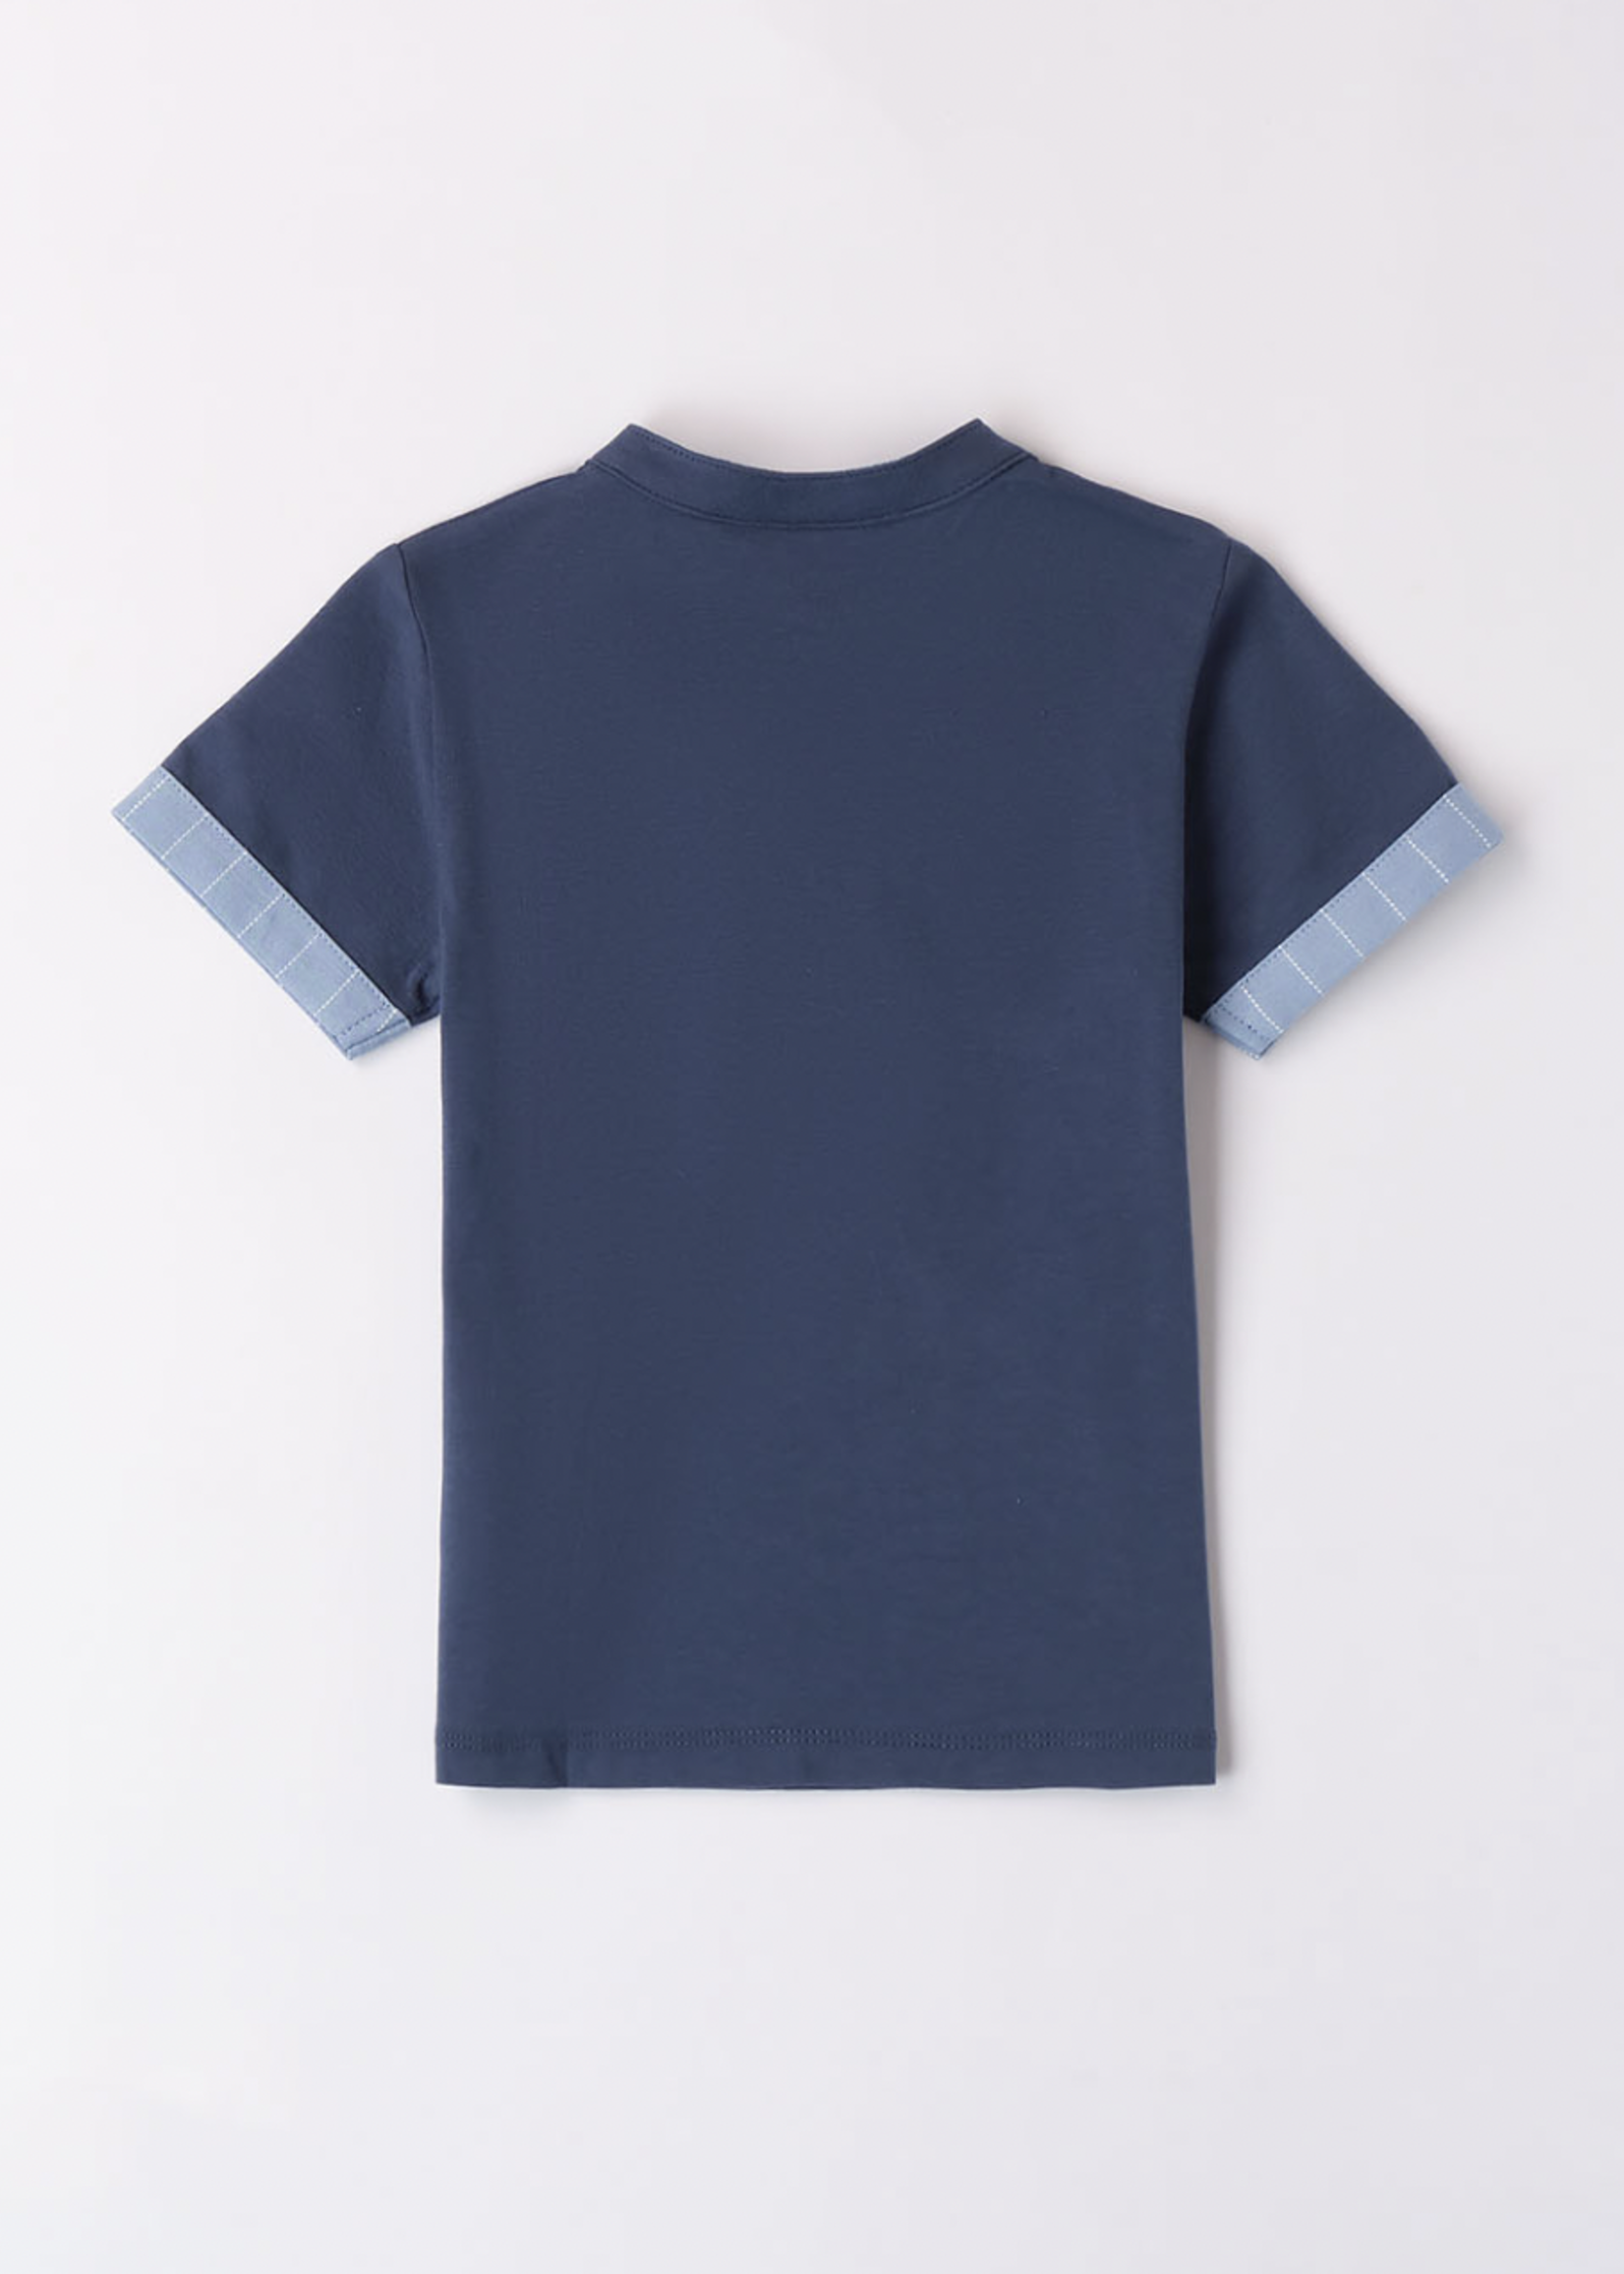 Sarabanda T-shirt Bleu Noeud Détachable